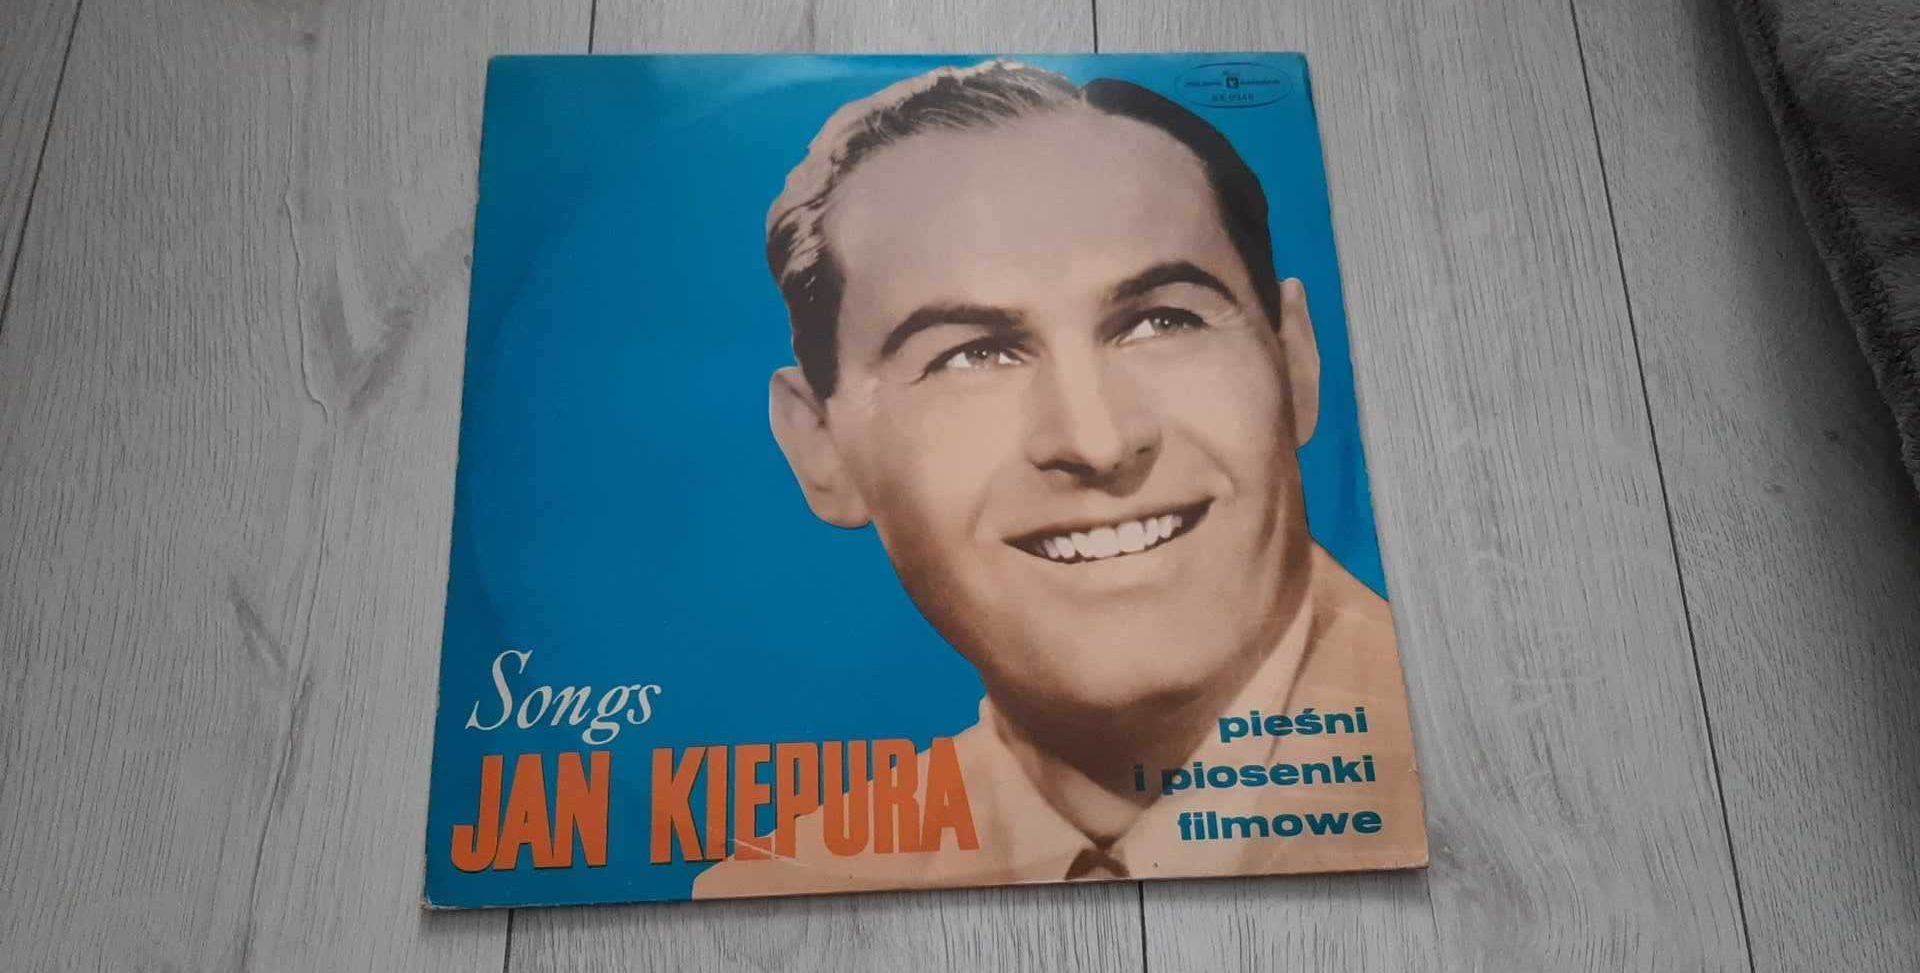 Jan Kiepura " pieśni i piosenki firmowe"- płyta winylowa